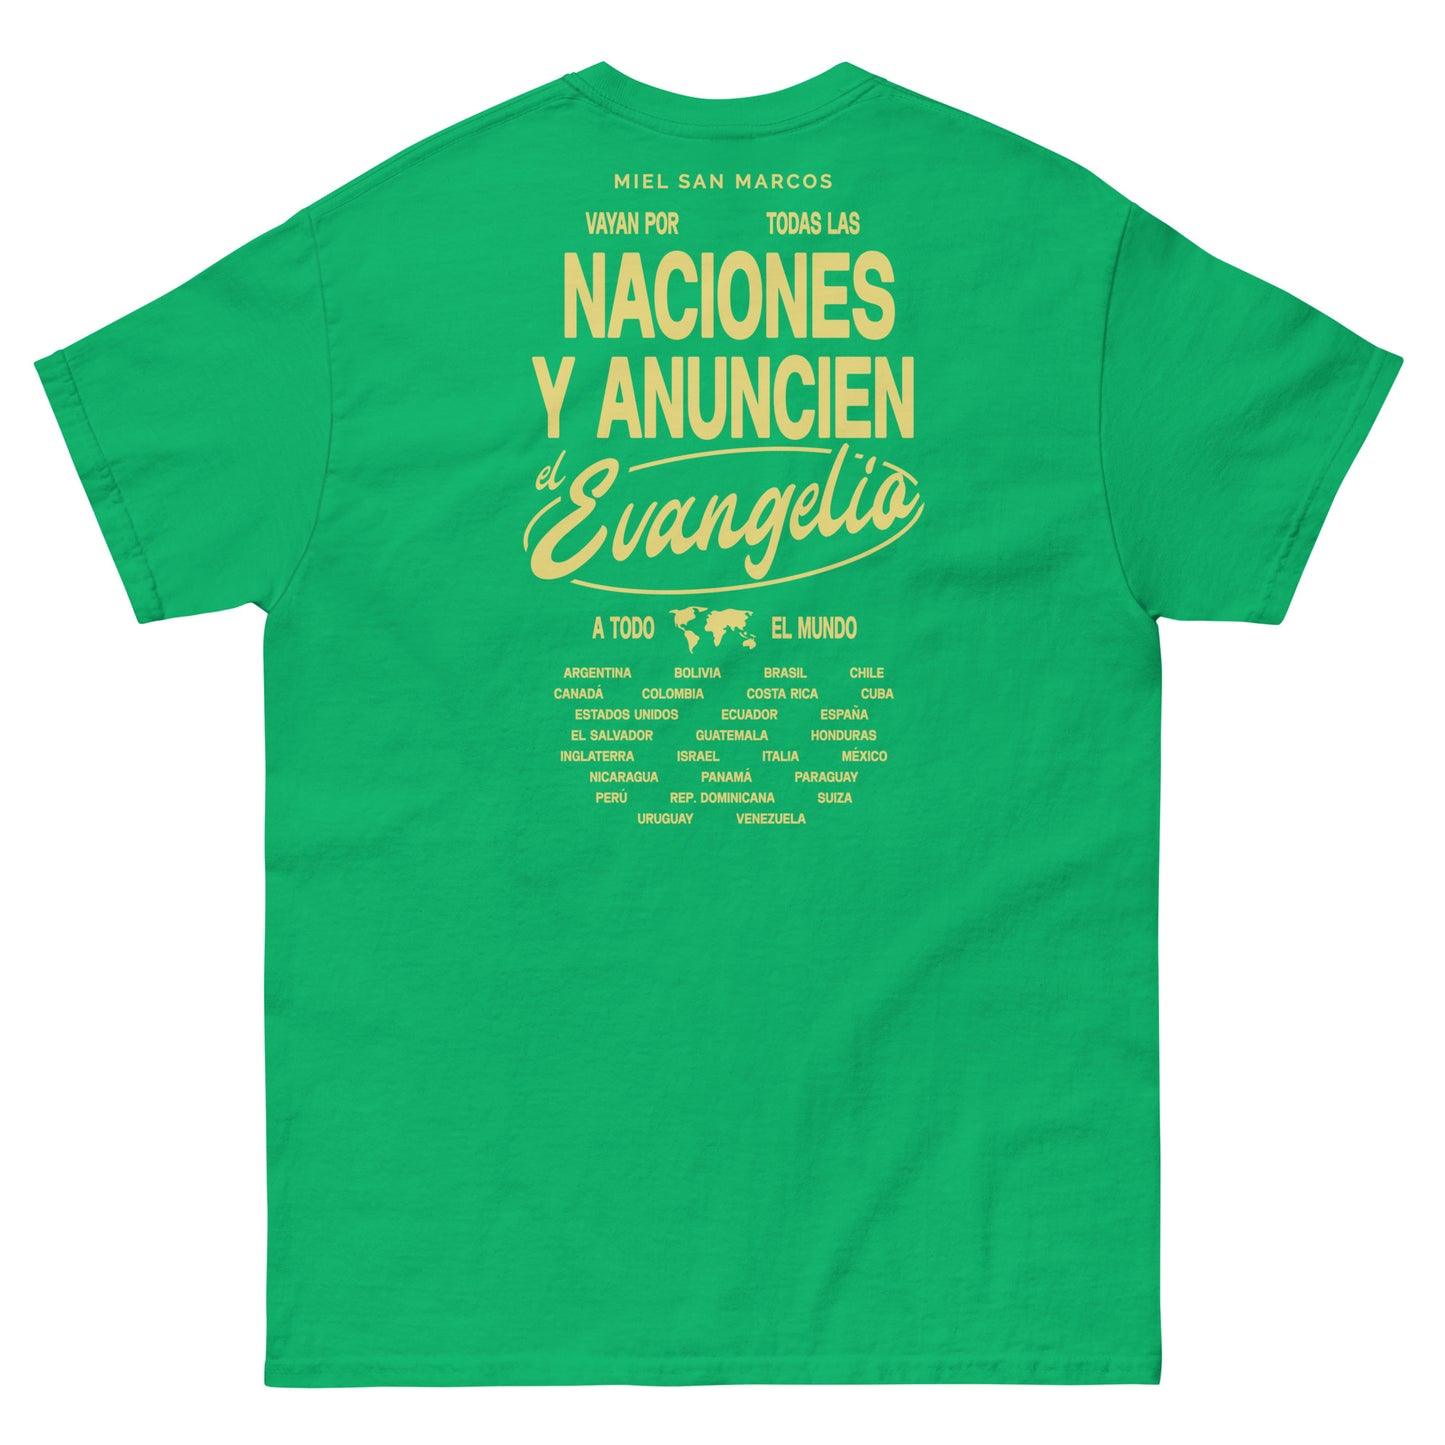 Anunciemos el EVANGELIO - Camiseta clásica Tour Evangelio Miel San Marcos